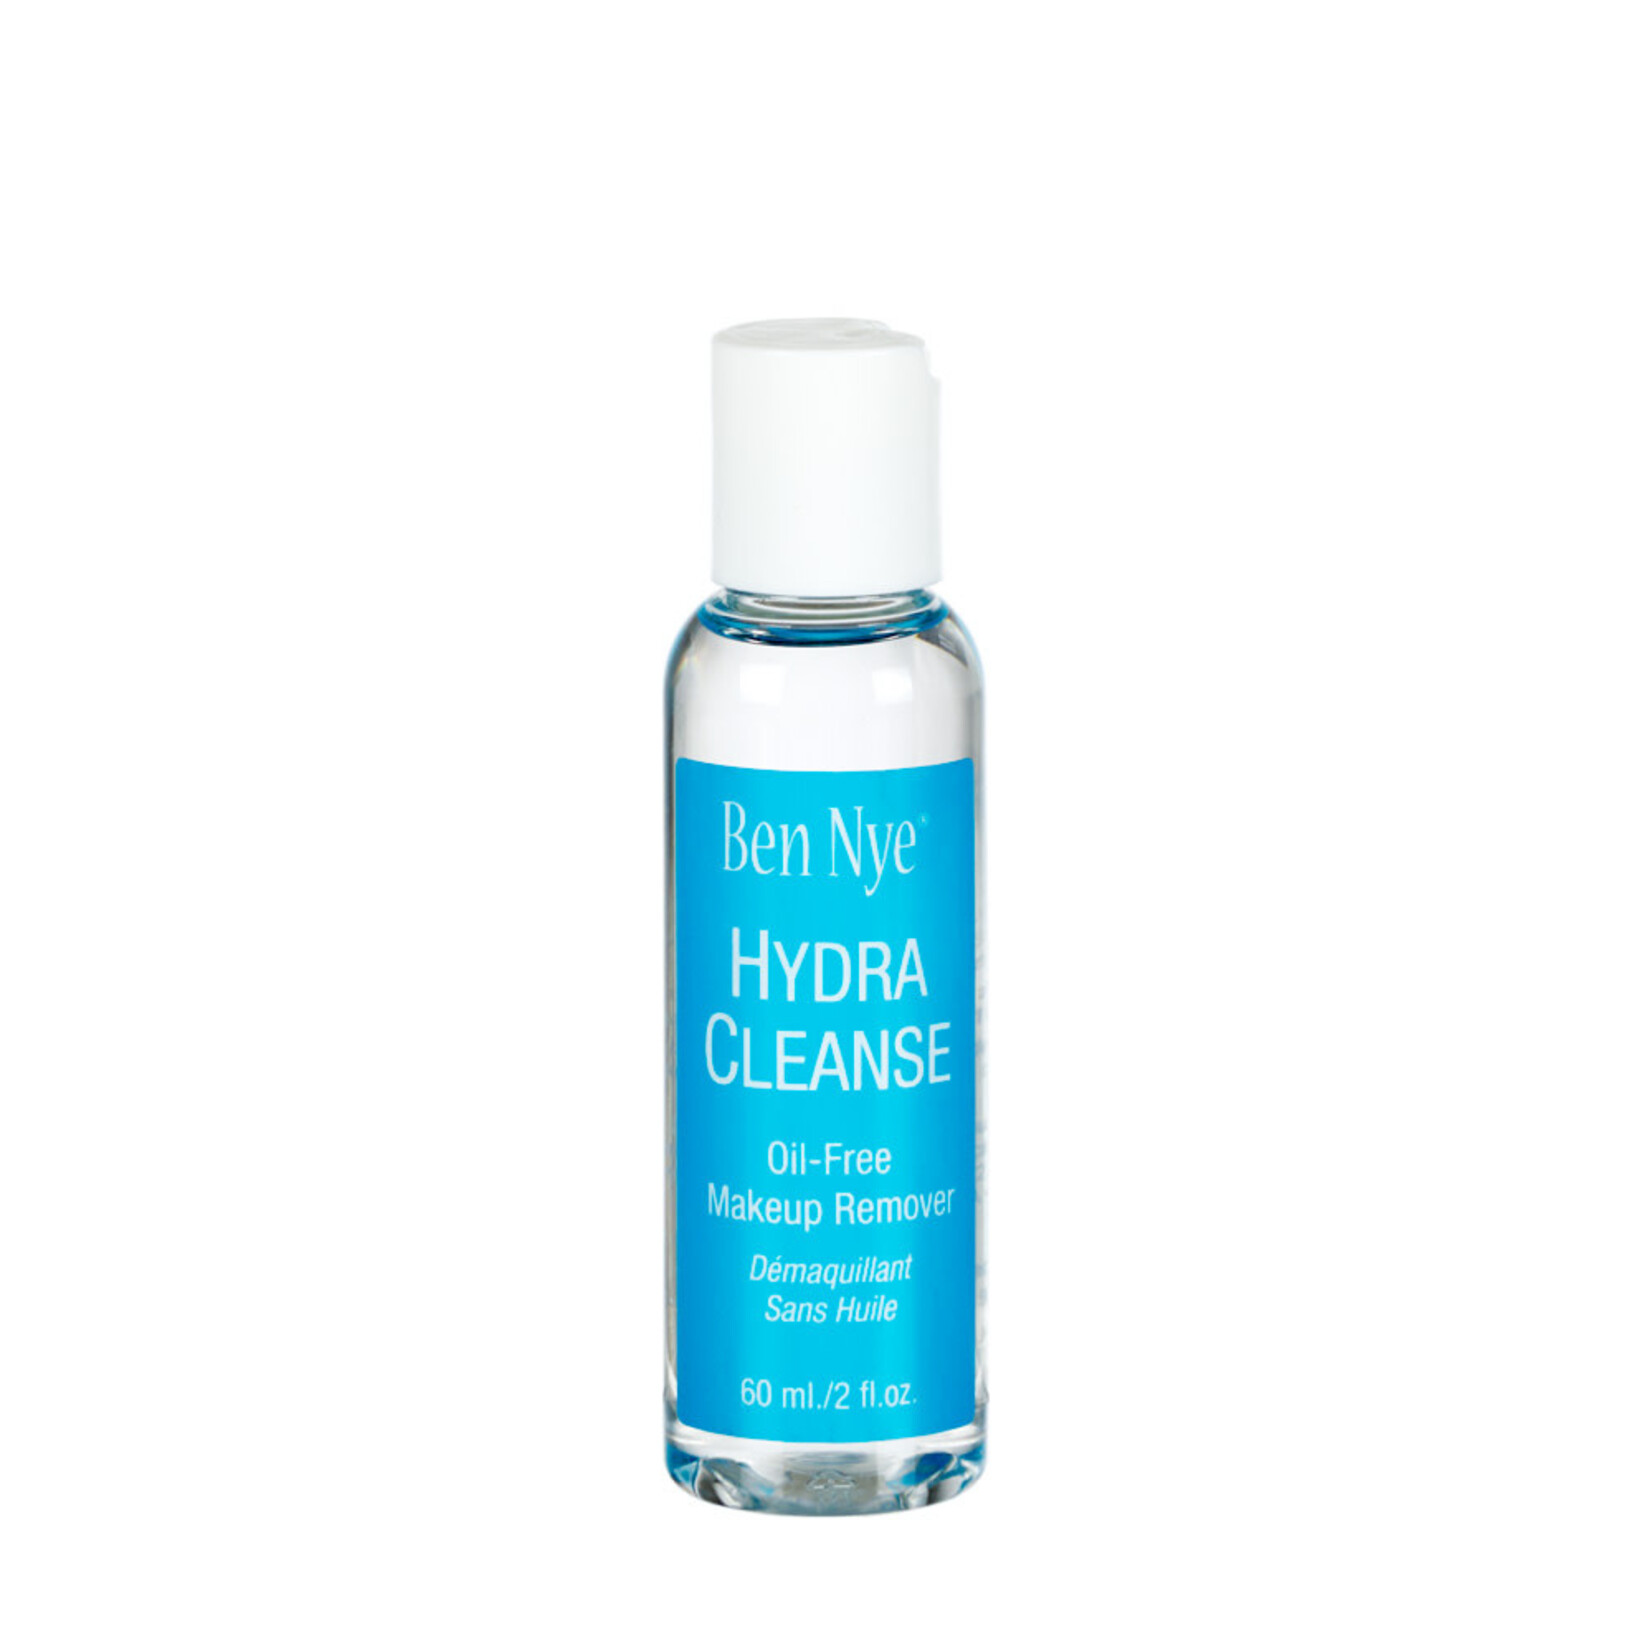 Ben Nye Ben Nye HR-1 Hydra Cleanse Oil-free Makeup Remover 2oz